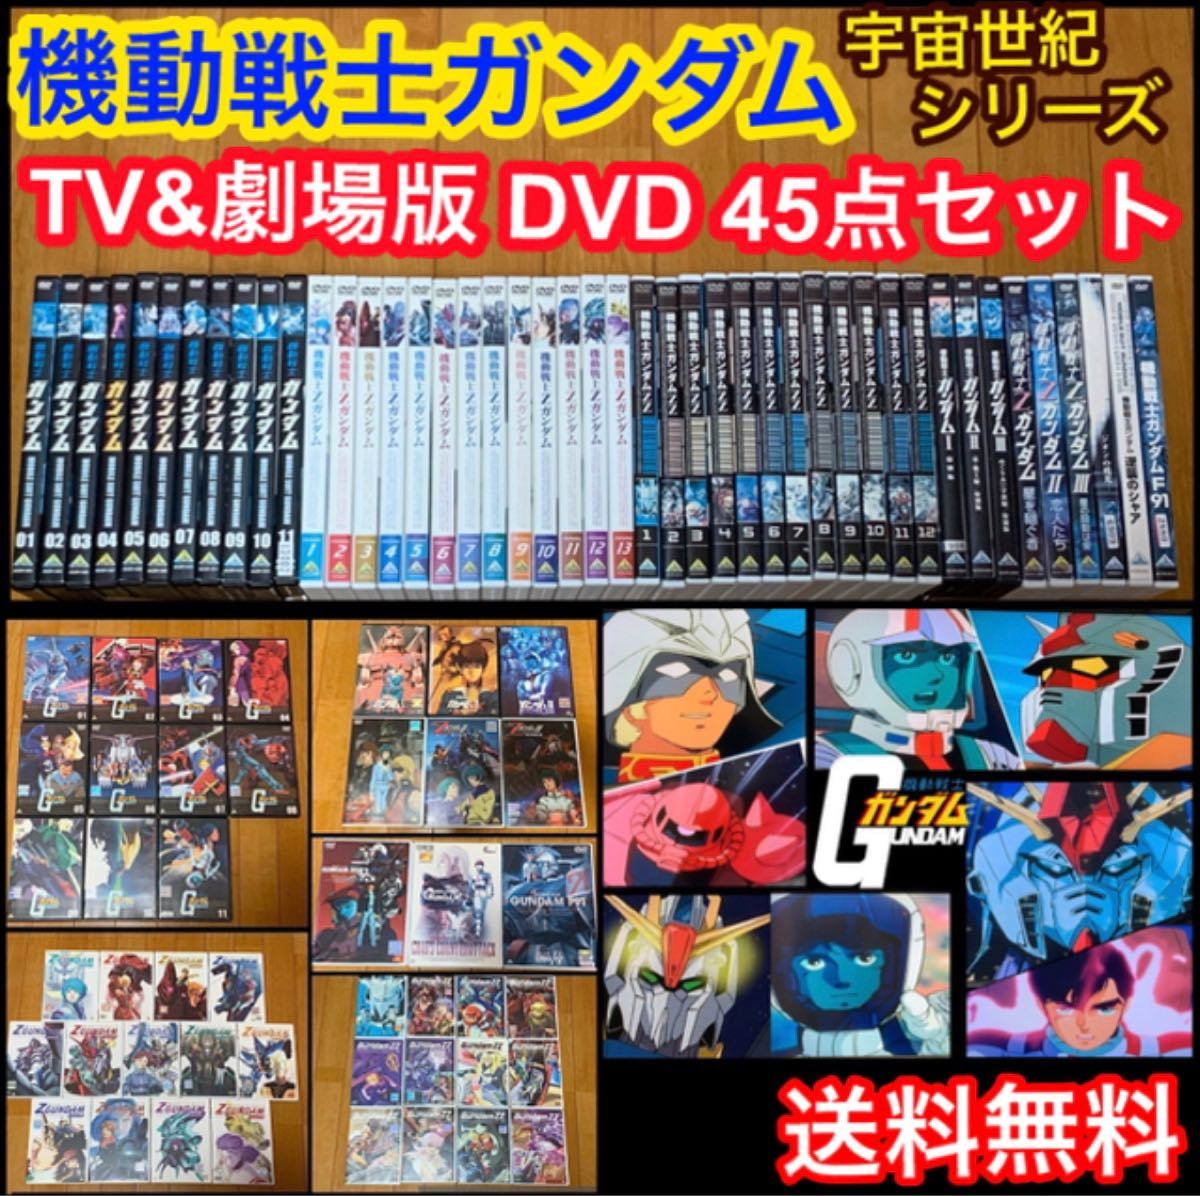 【送料無料】機動戦士ガンダム TVシリーズ&劇場版 DVD 45点セット